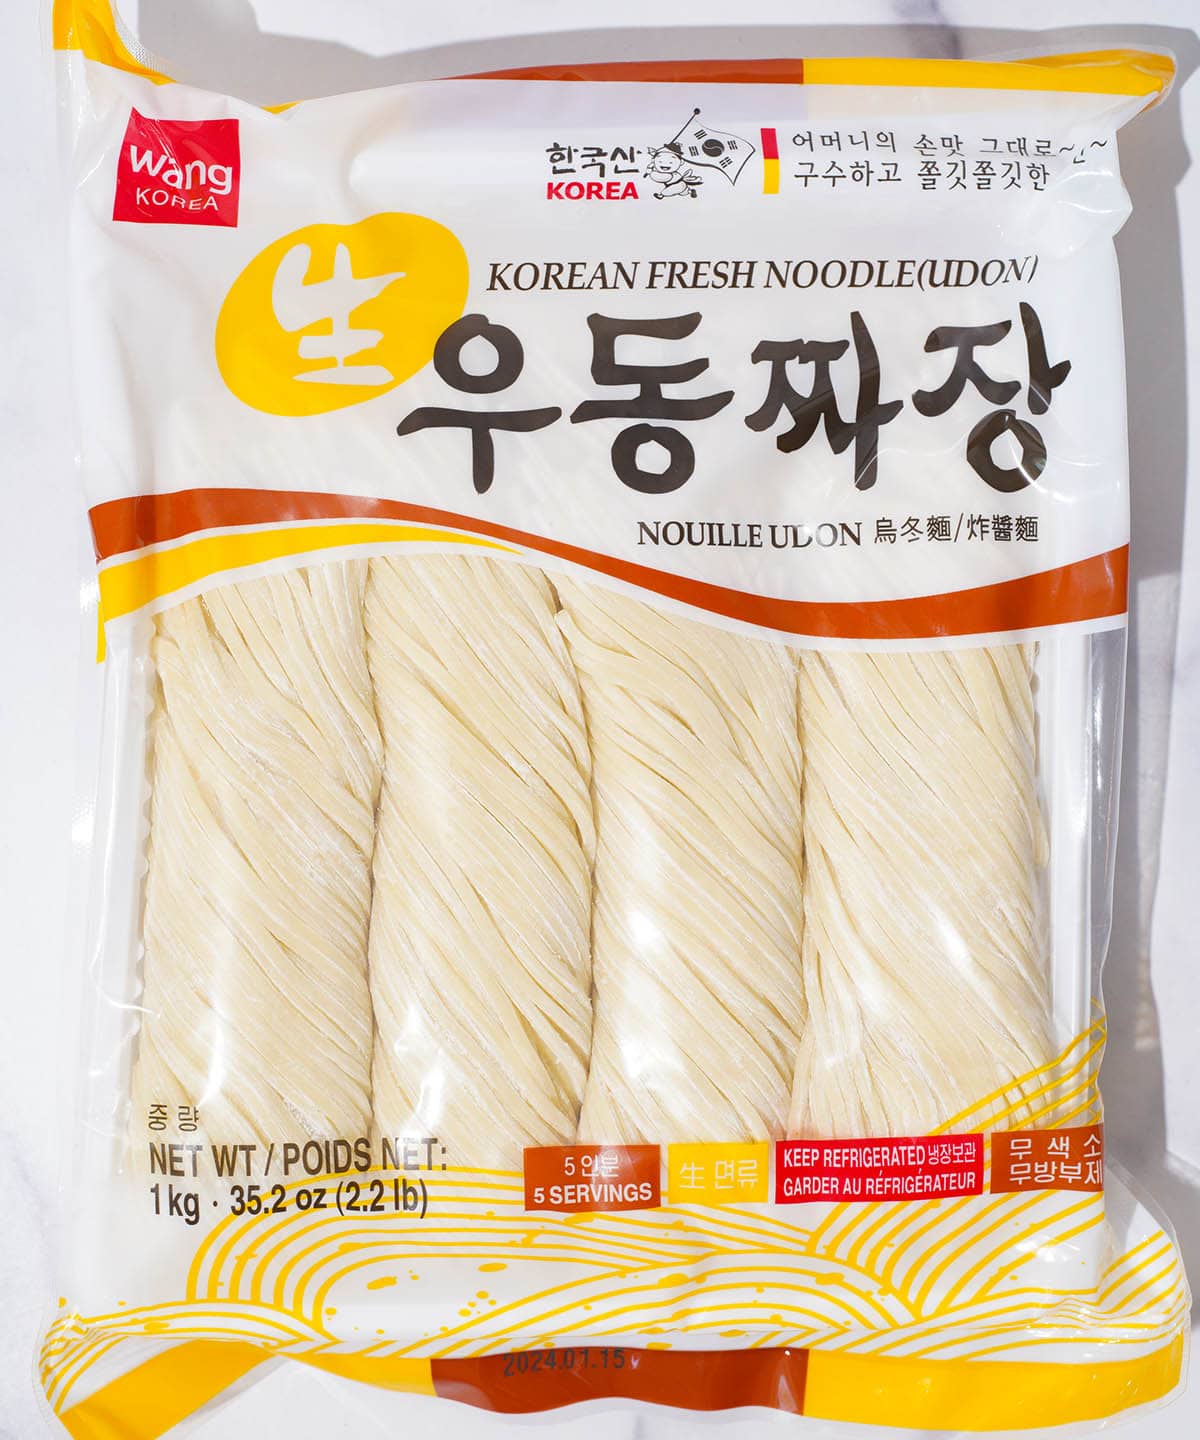 A package of Wang Korea brand Korean fresh noodles.